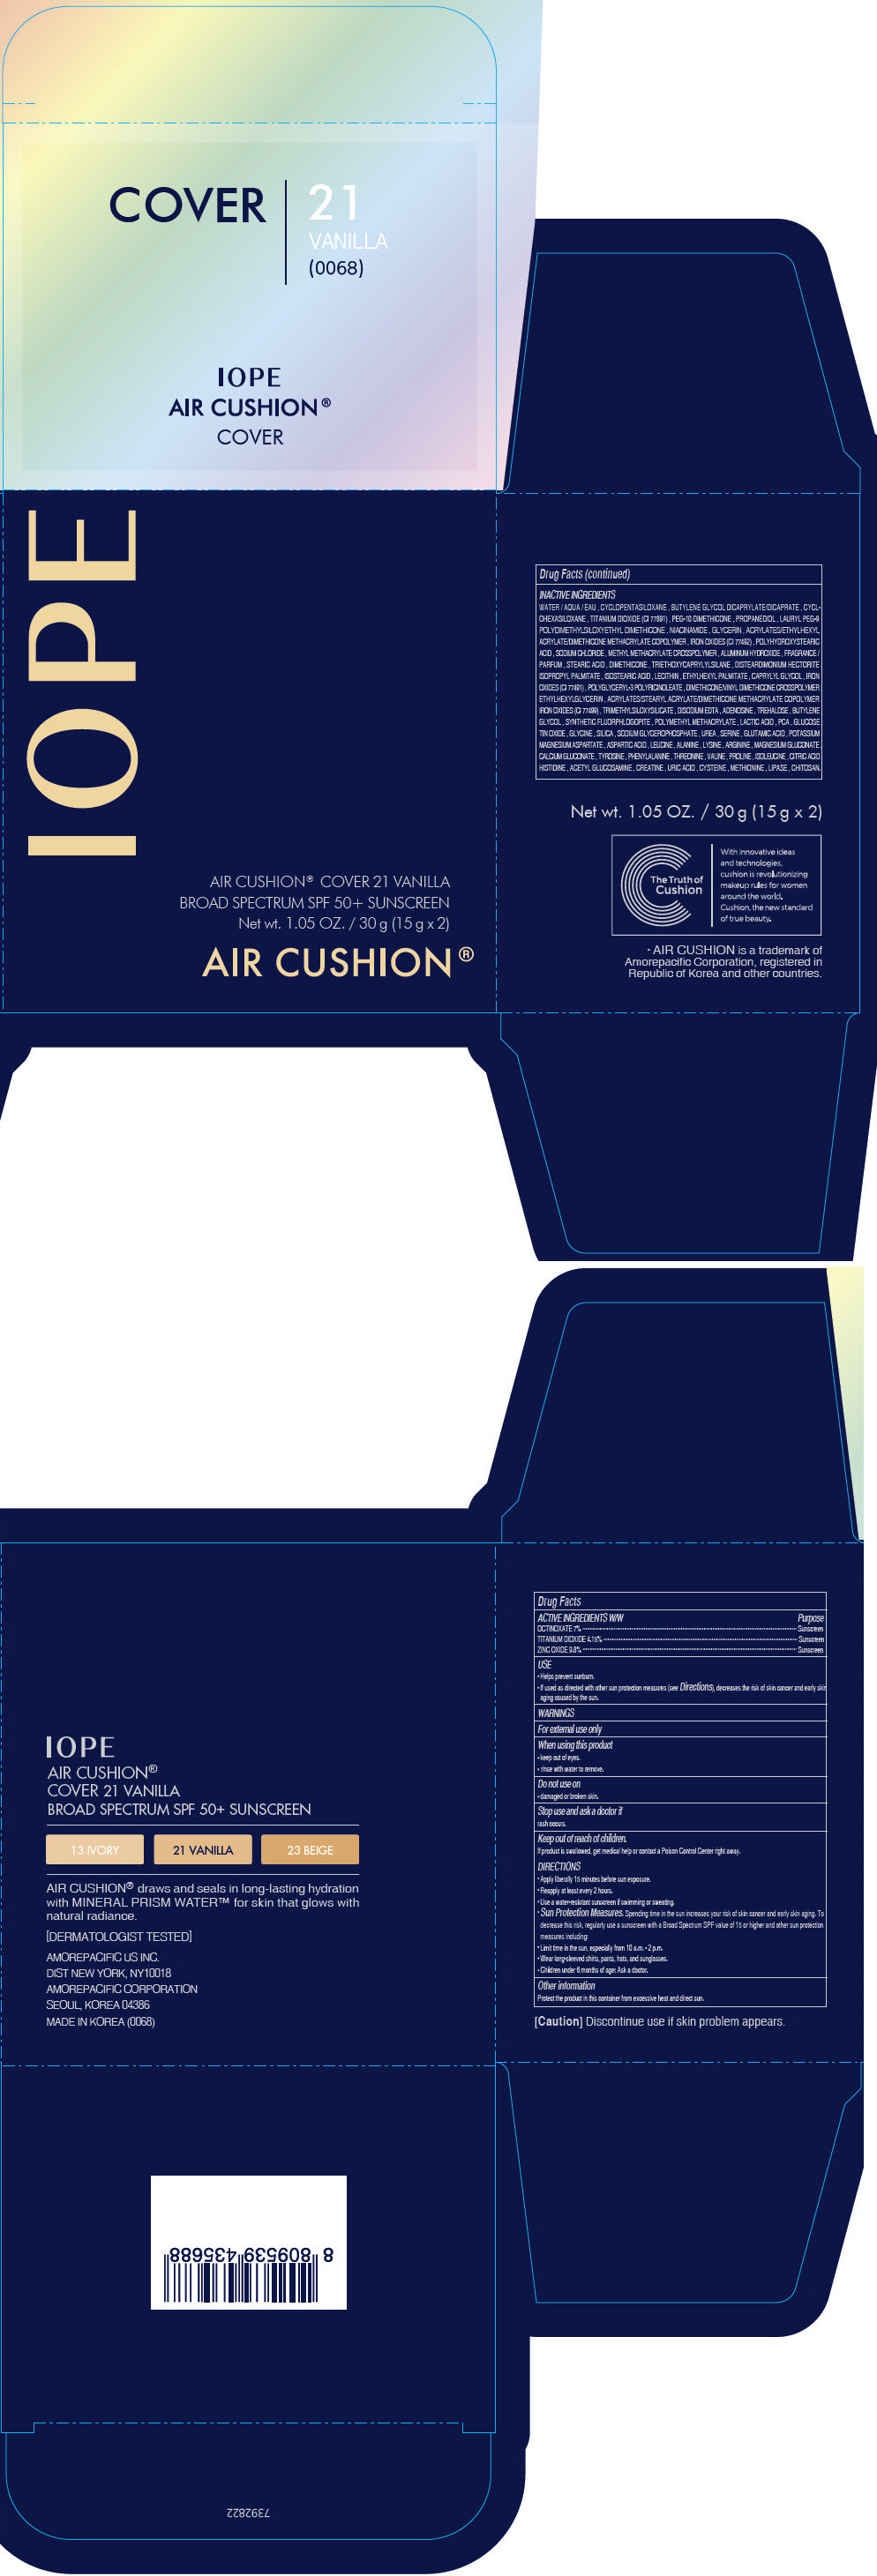 PRINCIPAL DISPLAY PANEL - 15 g Container Carton - 21 Vanilla